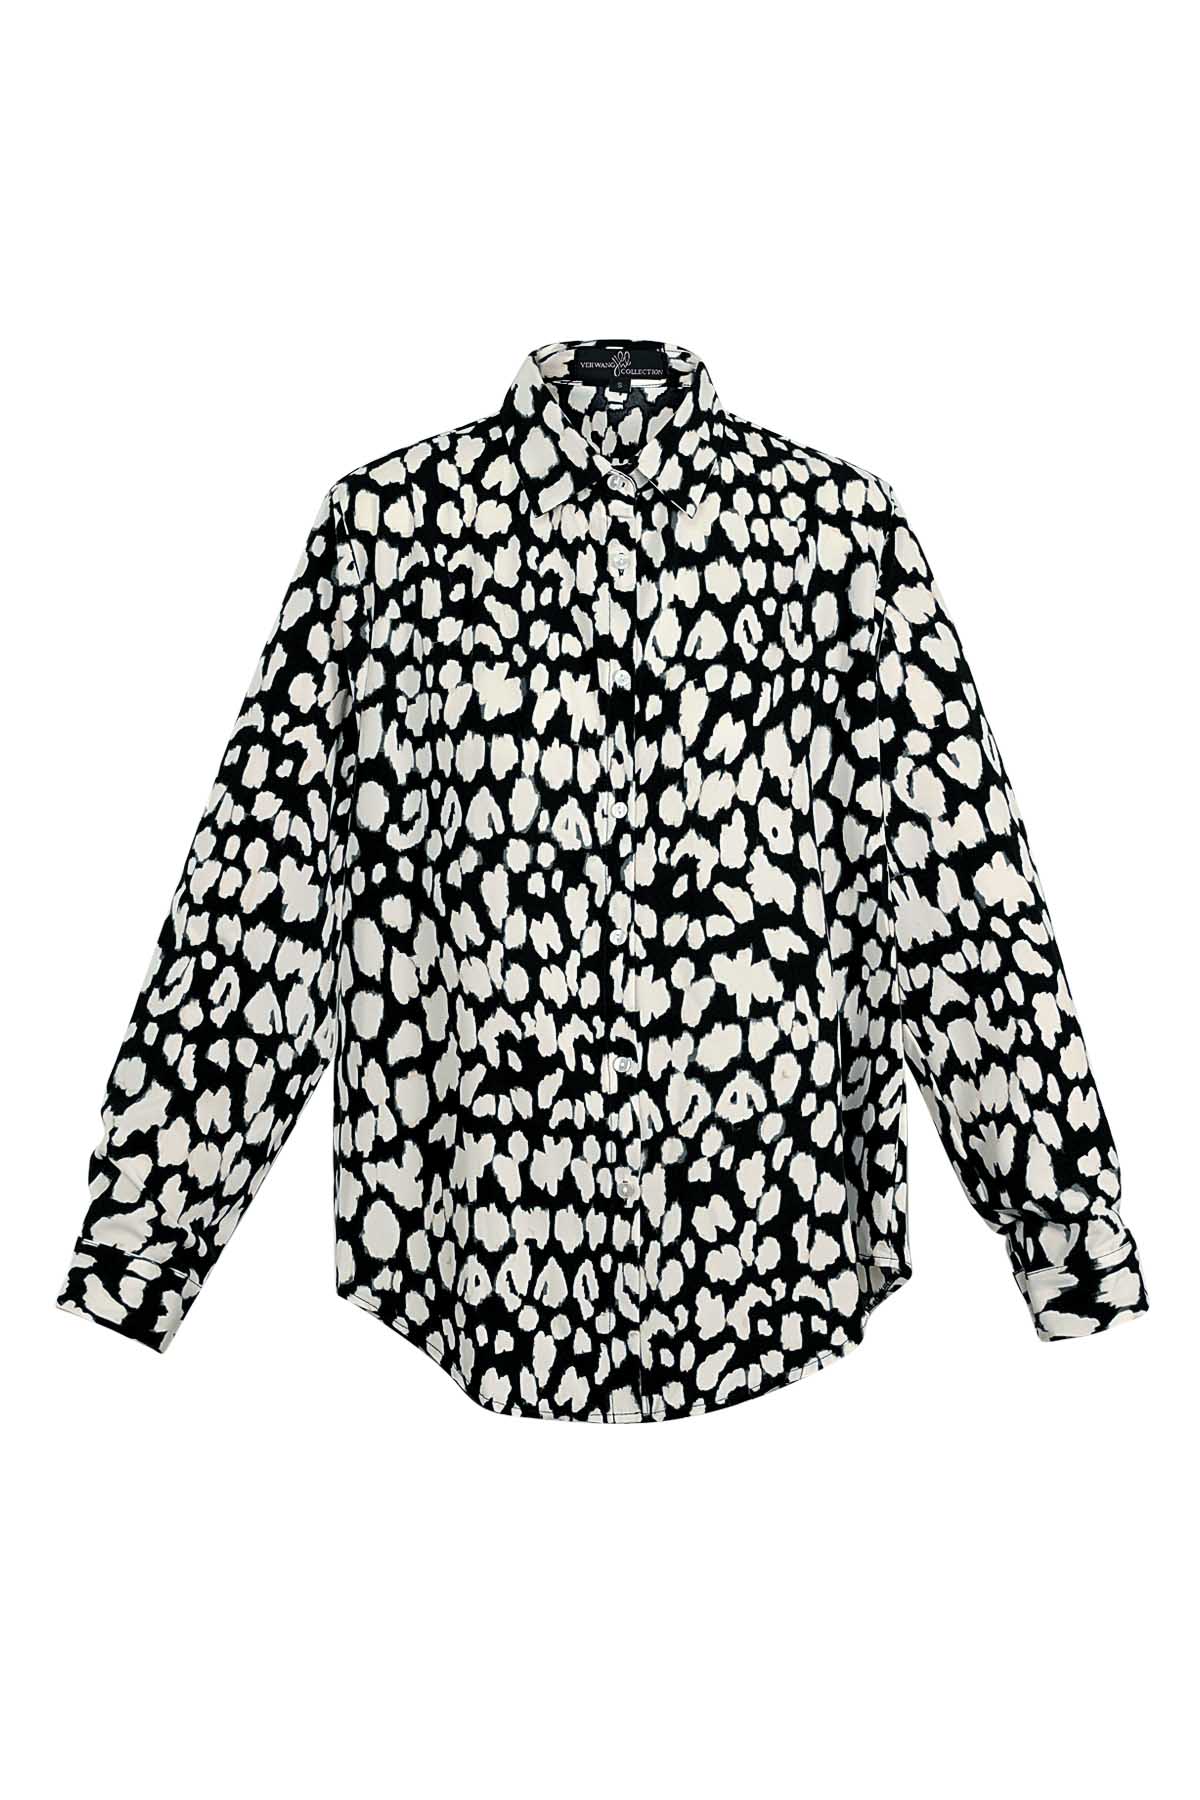 Bluse mit Leopardenmuster in Schwarz und Weiß